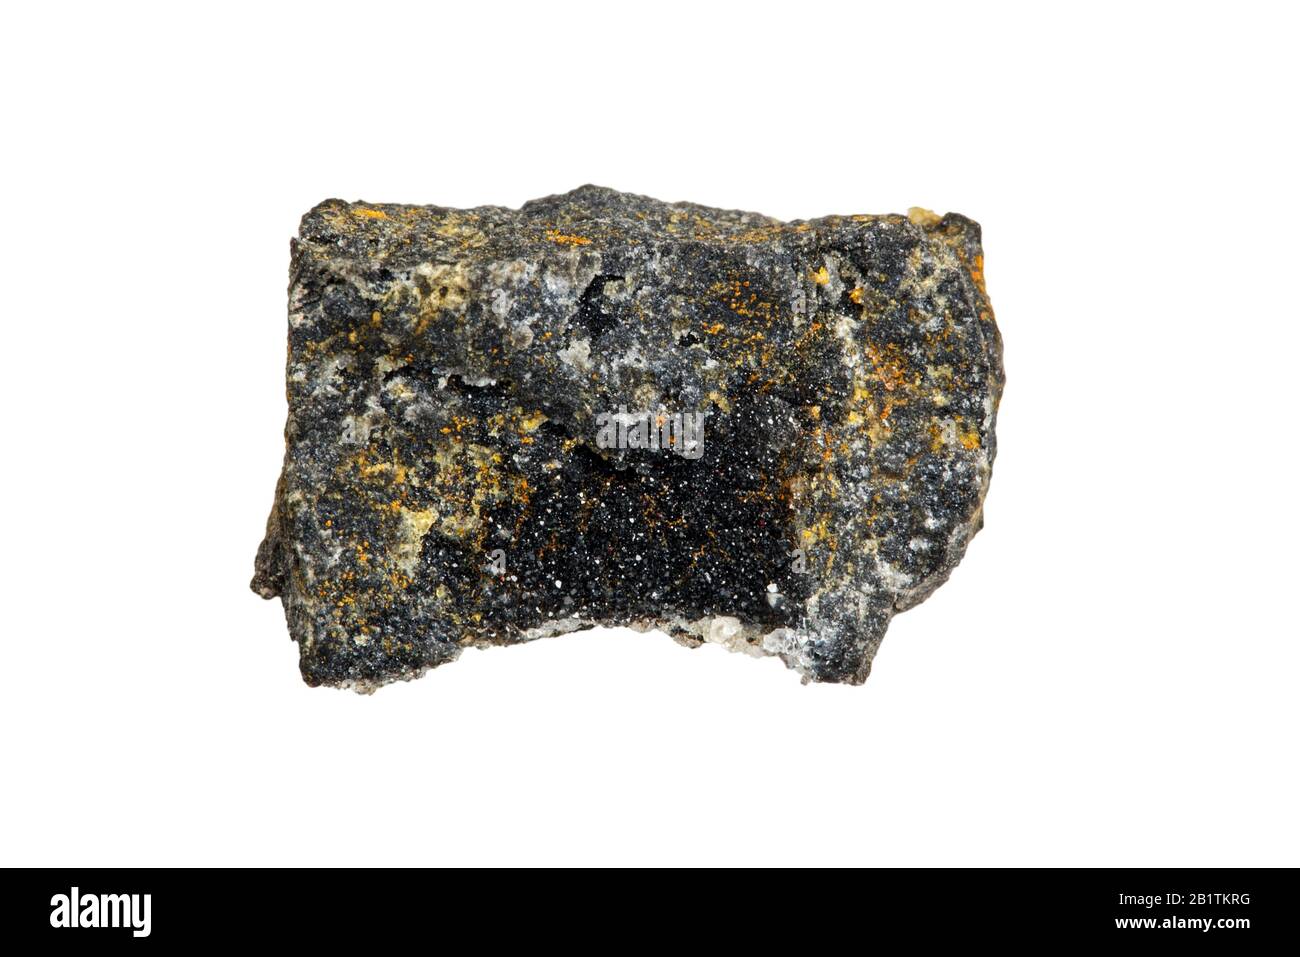 Galena/Lead Gblick, natürliche Mineralform von Bleisulfid, in Plombières, Belgien vor weißem Hintergrund gefunden Stockfoto